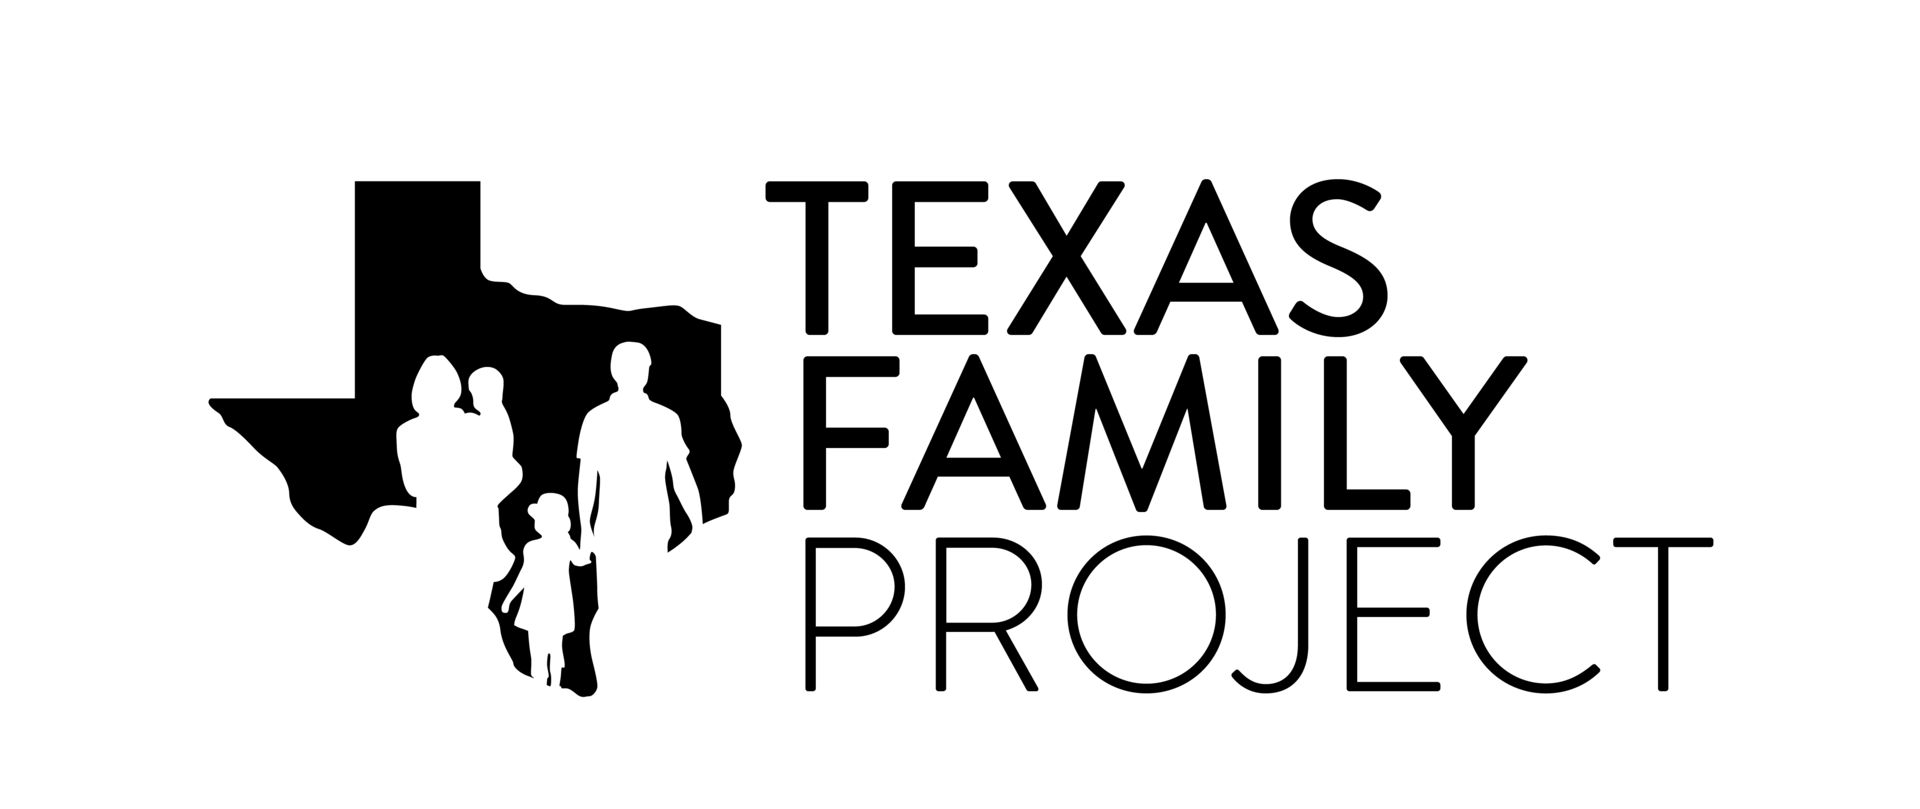 Tfp logofinal black